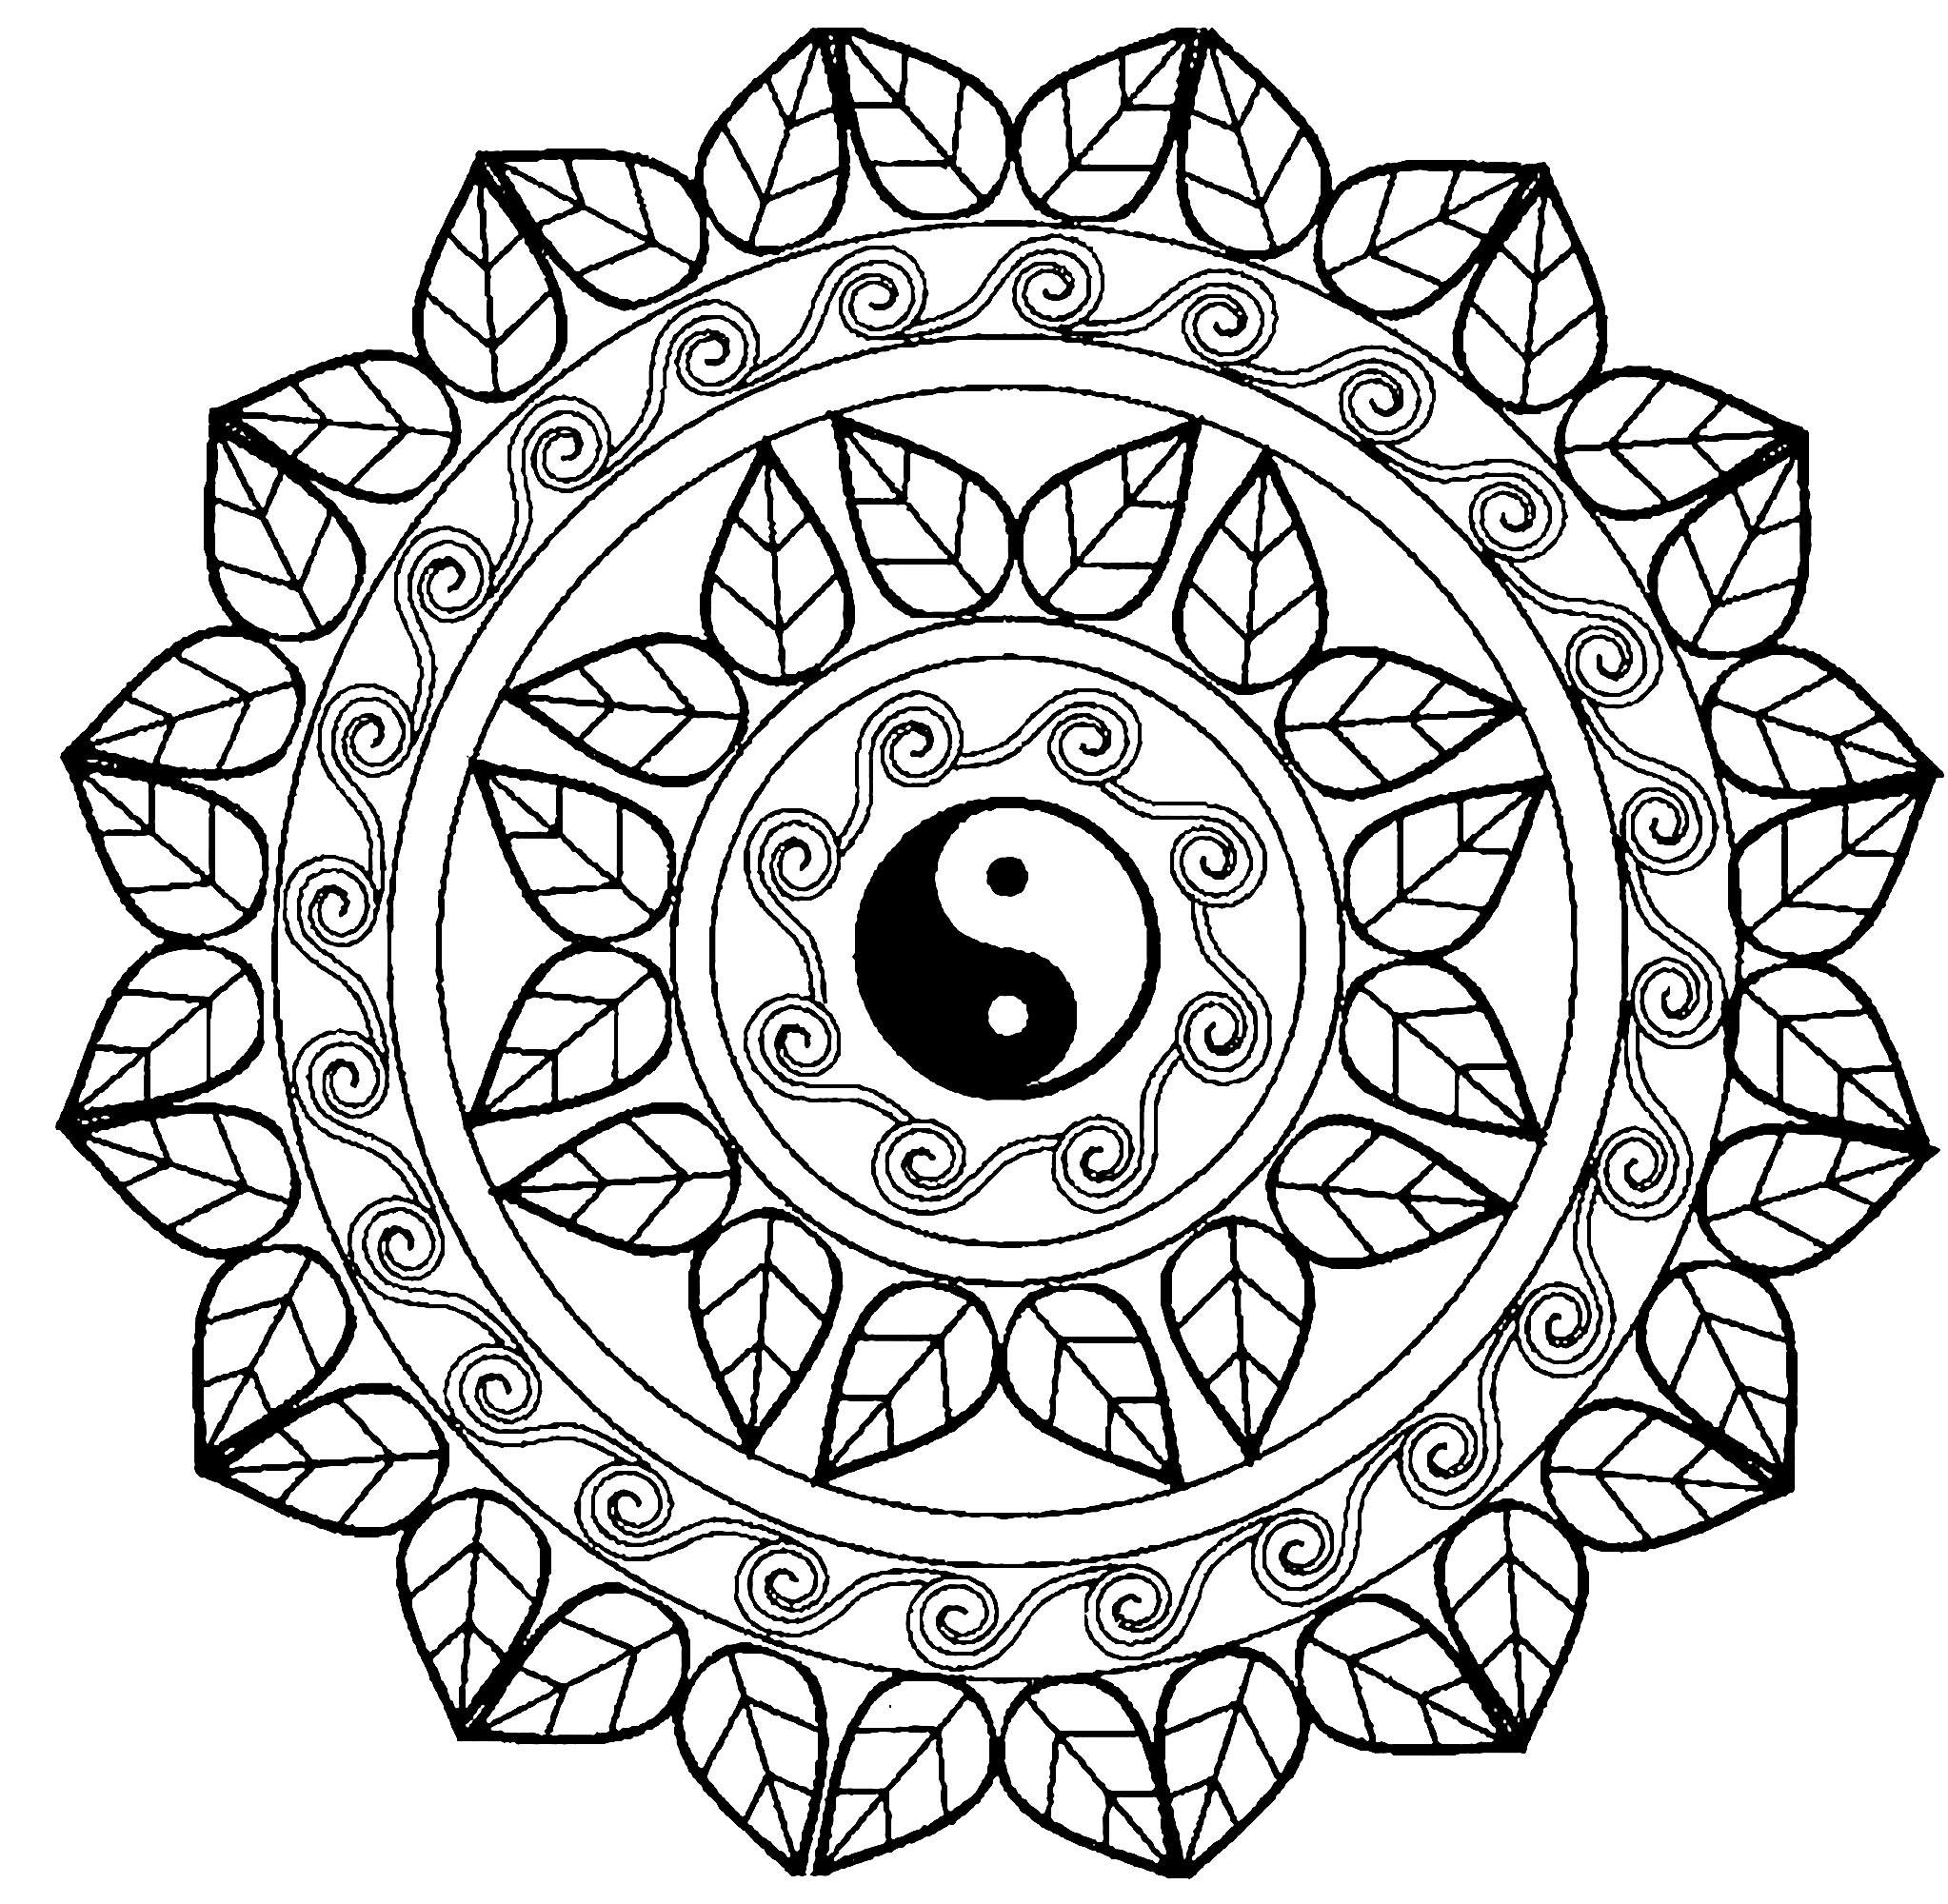 Tanti piccoli dettagli e aree piuttosto ridotte, per un mandala Yin & Yang in definitiva molto originale e armonioso.